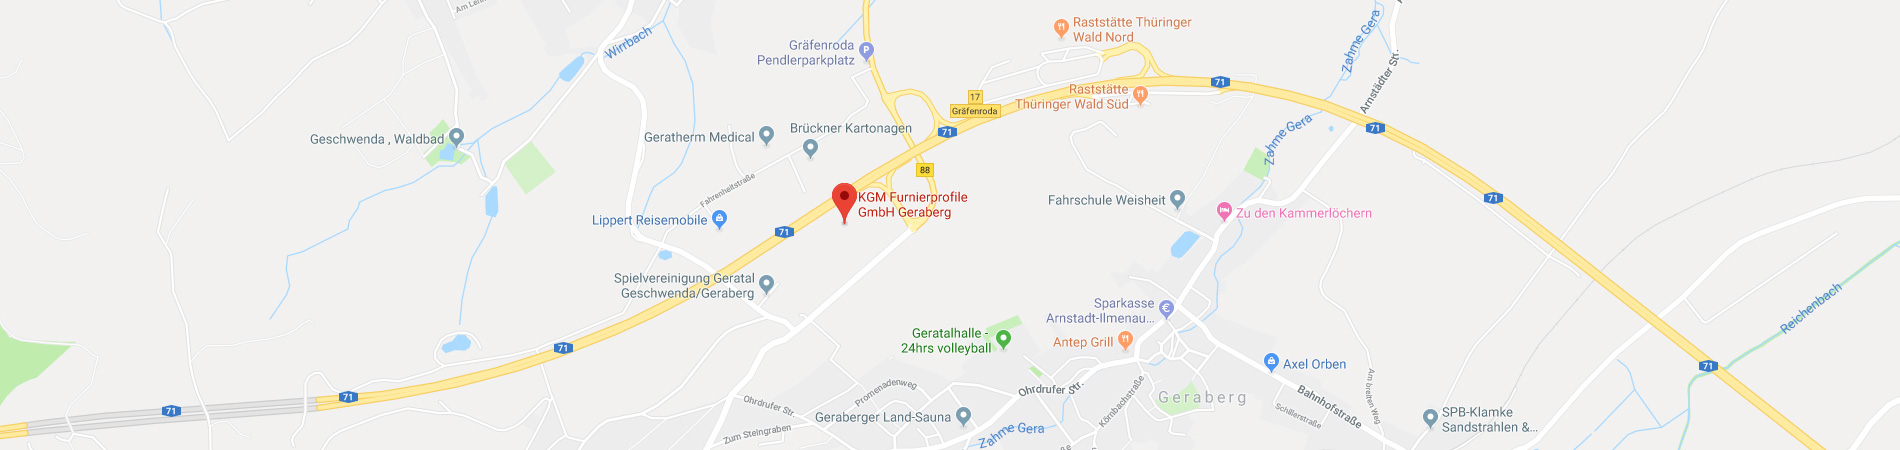 Standortkarte KGM Furnierprofile GmbH für INDUSTRIE INTOUCH Thüringer Wald